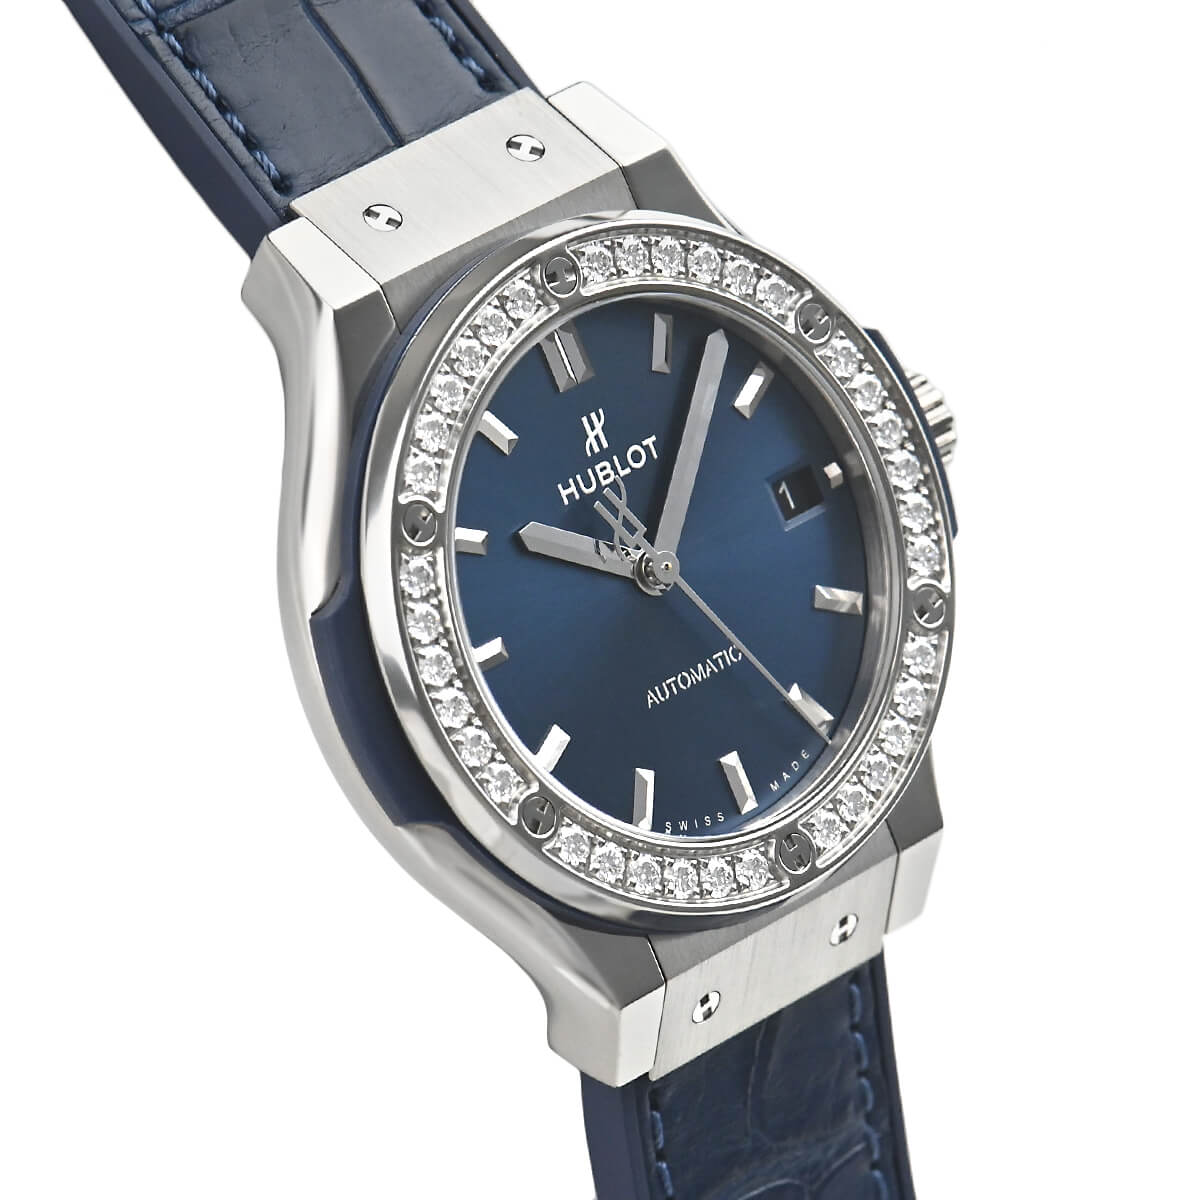 ユニセックス腕時計ウブロ クラシック・フュージョンチタニウム  565.NX.7170.LR.1204[1]